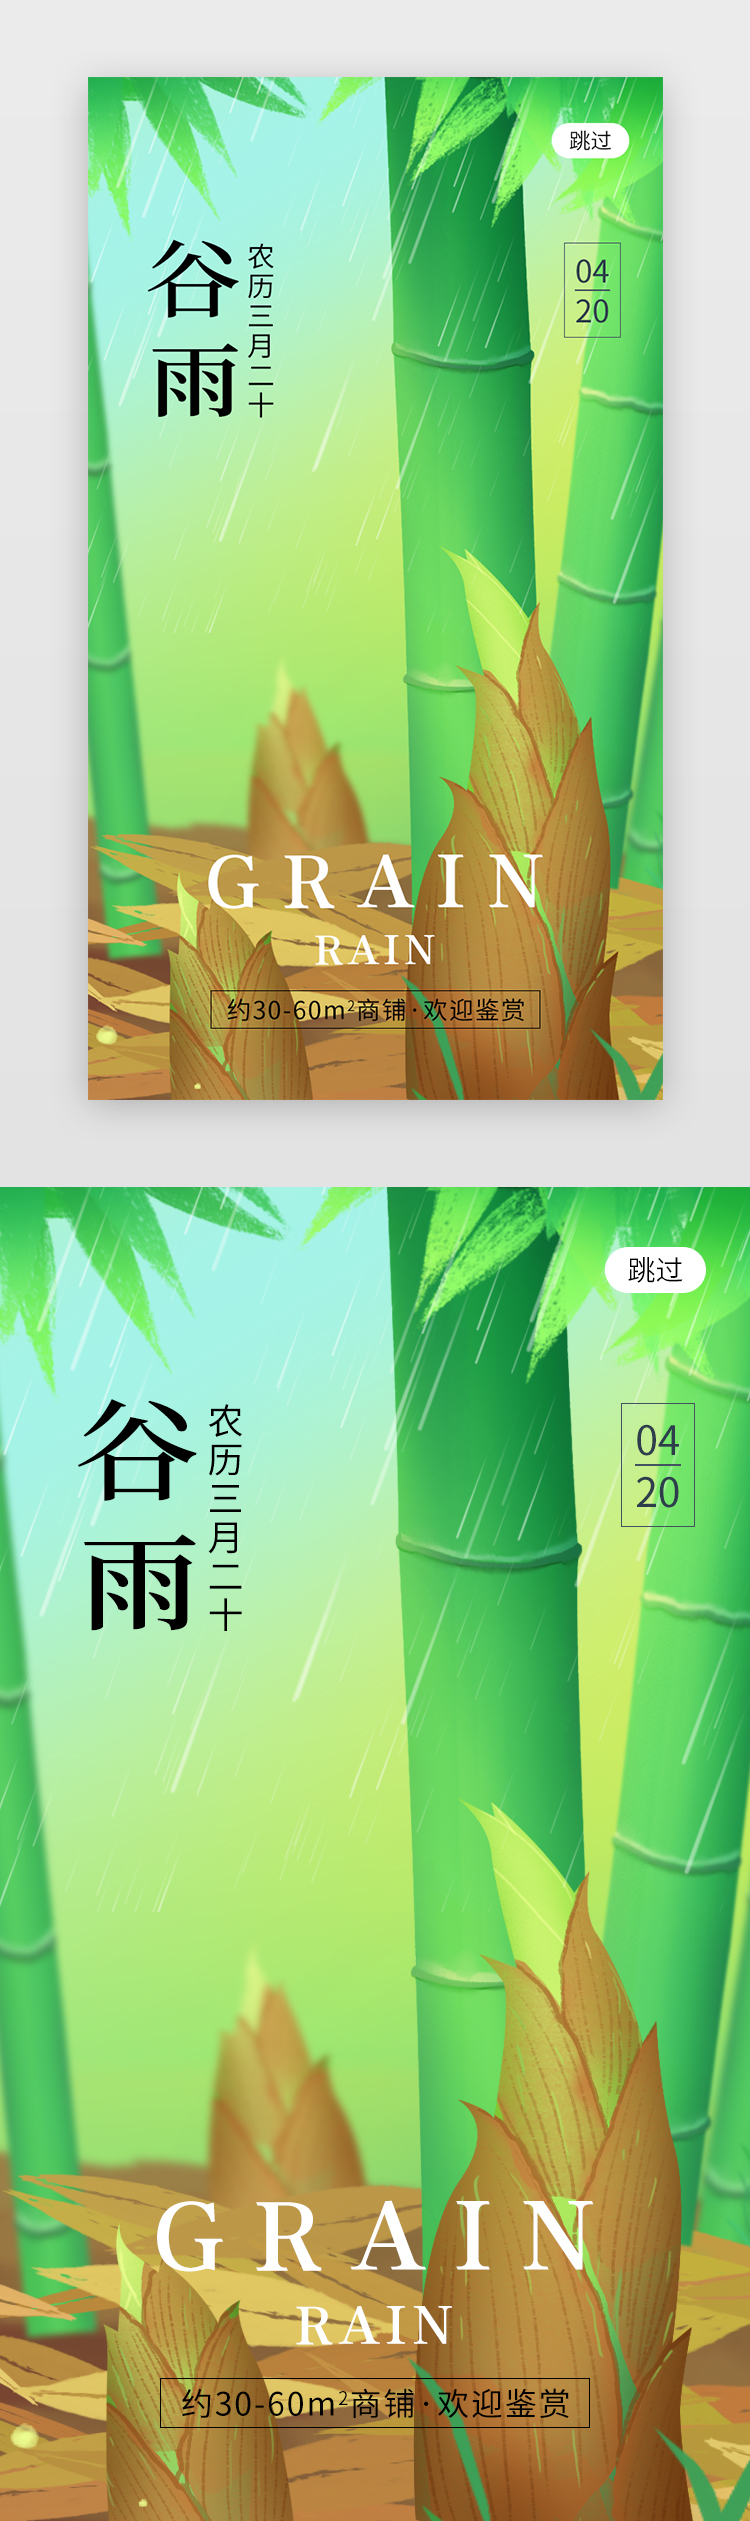 二十四节气谷雨app闪屏创意草绿色竹子图片